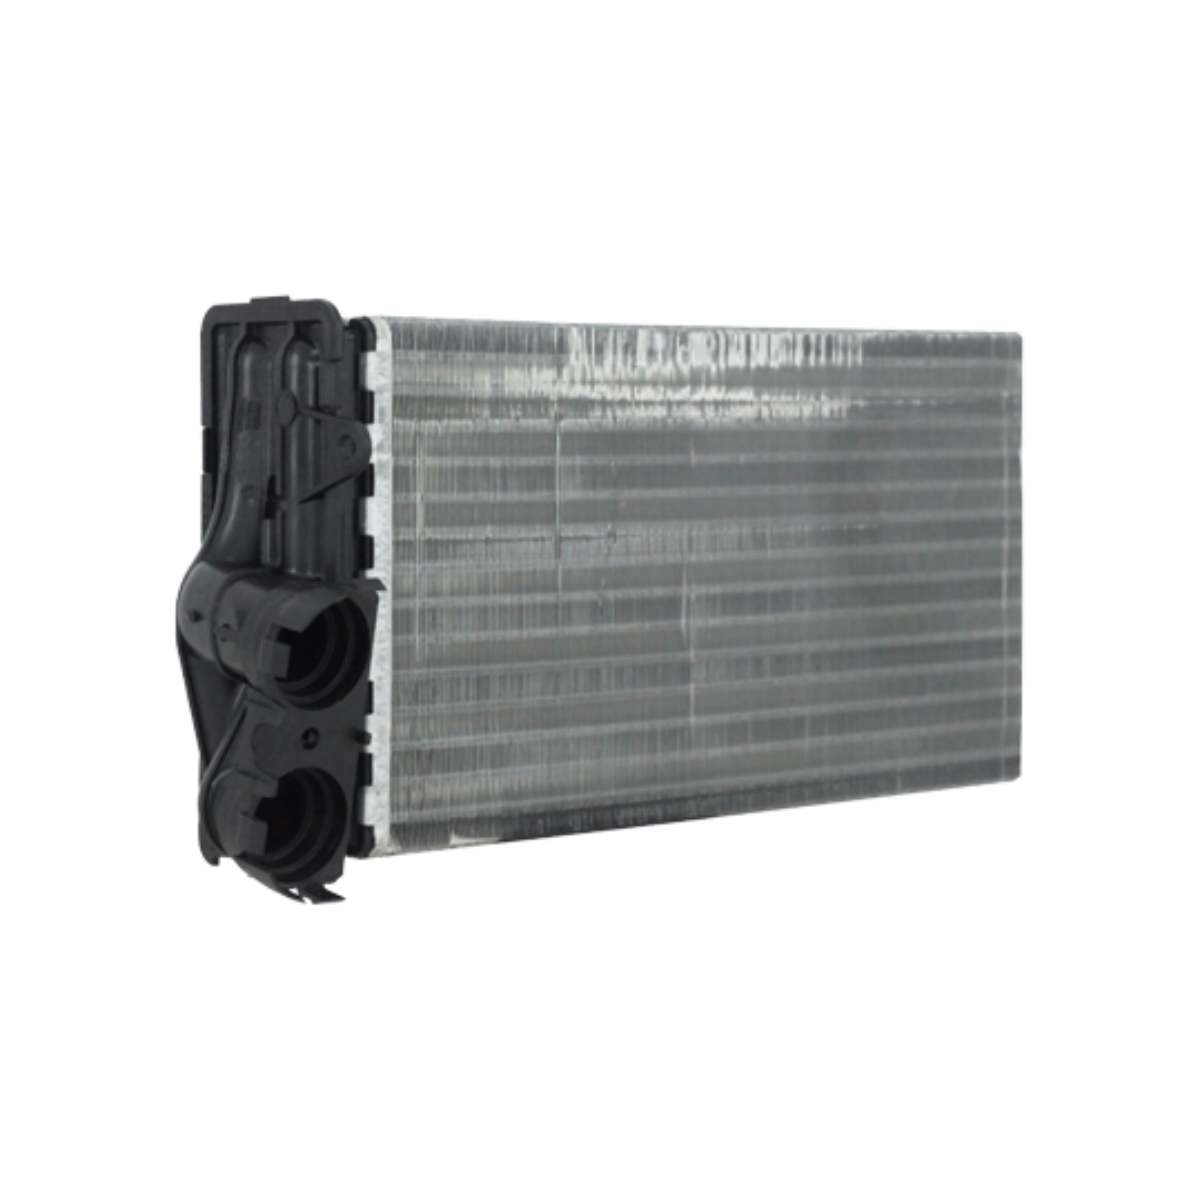 Evaporador Ar Condicionado Citroen Picasso Com Ar Quente Denso Bc116120-4500rc